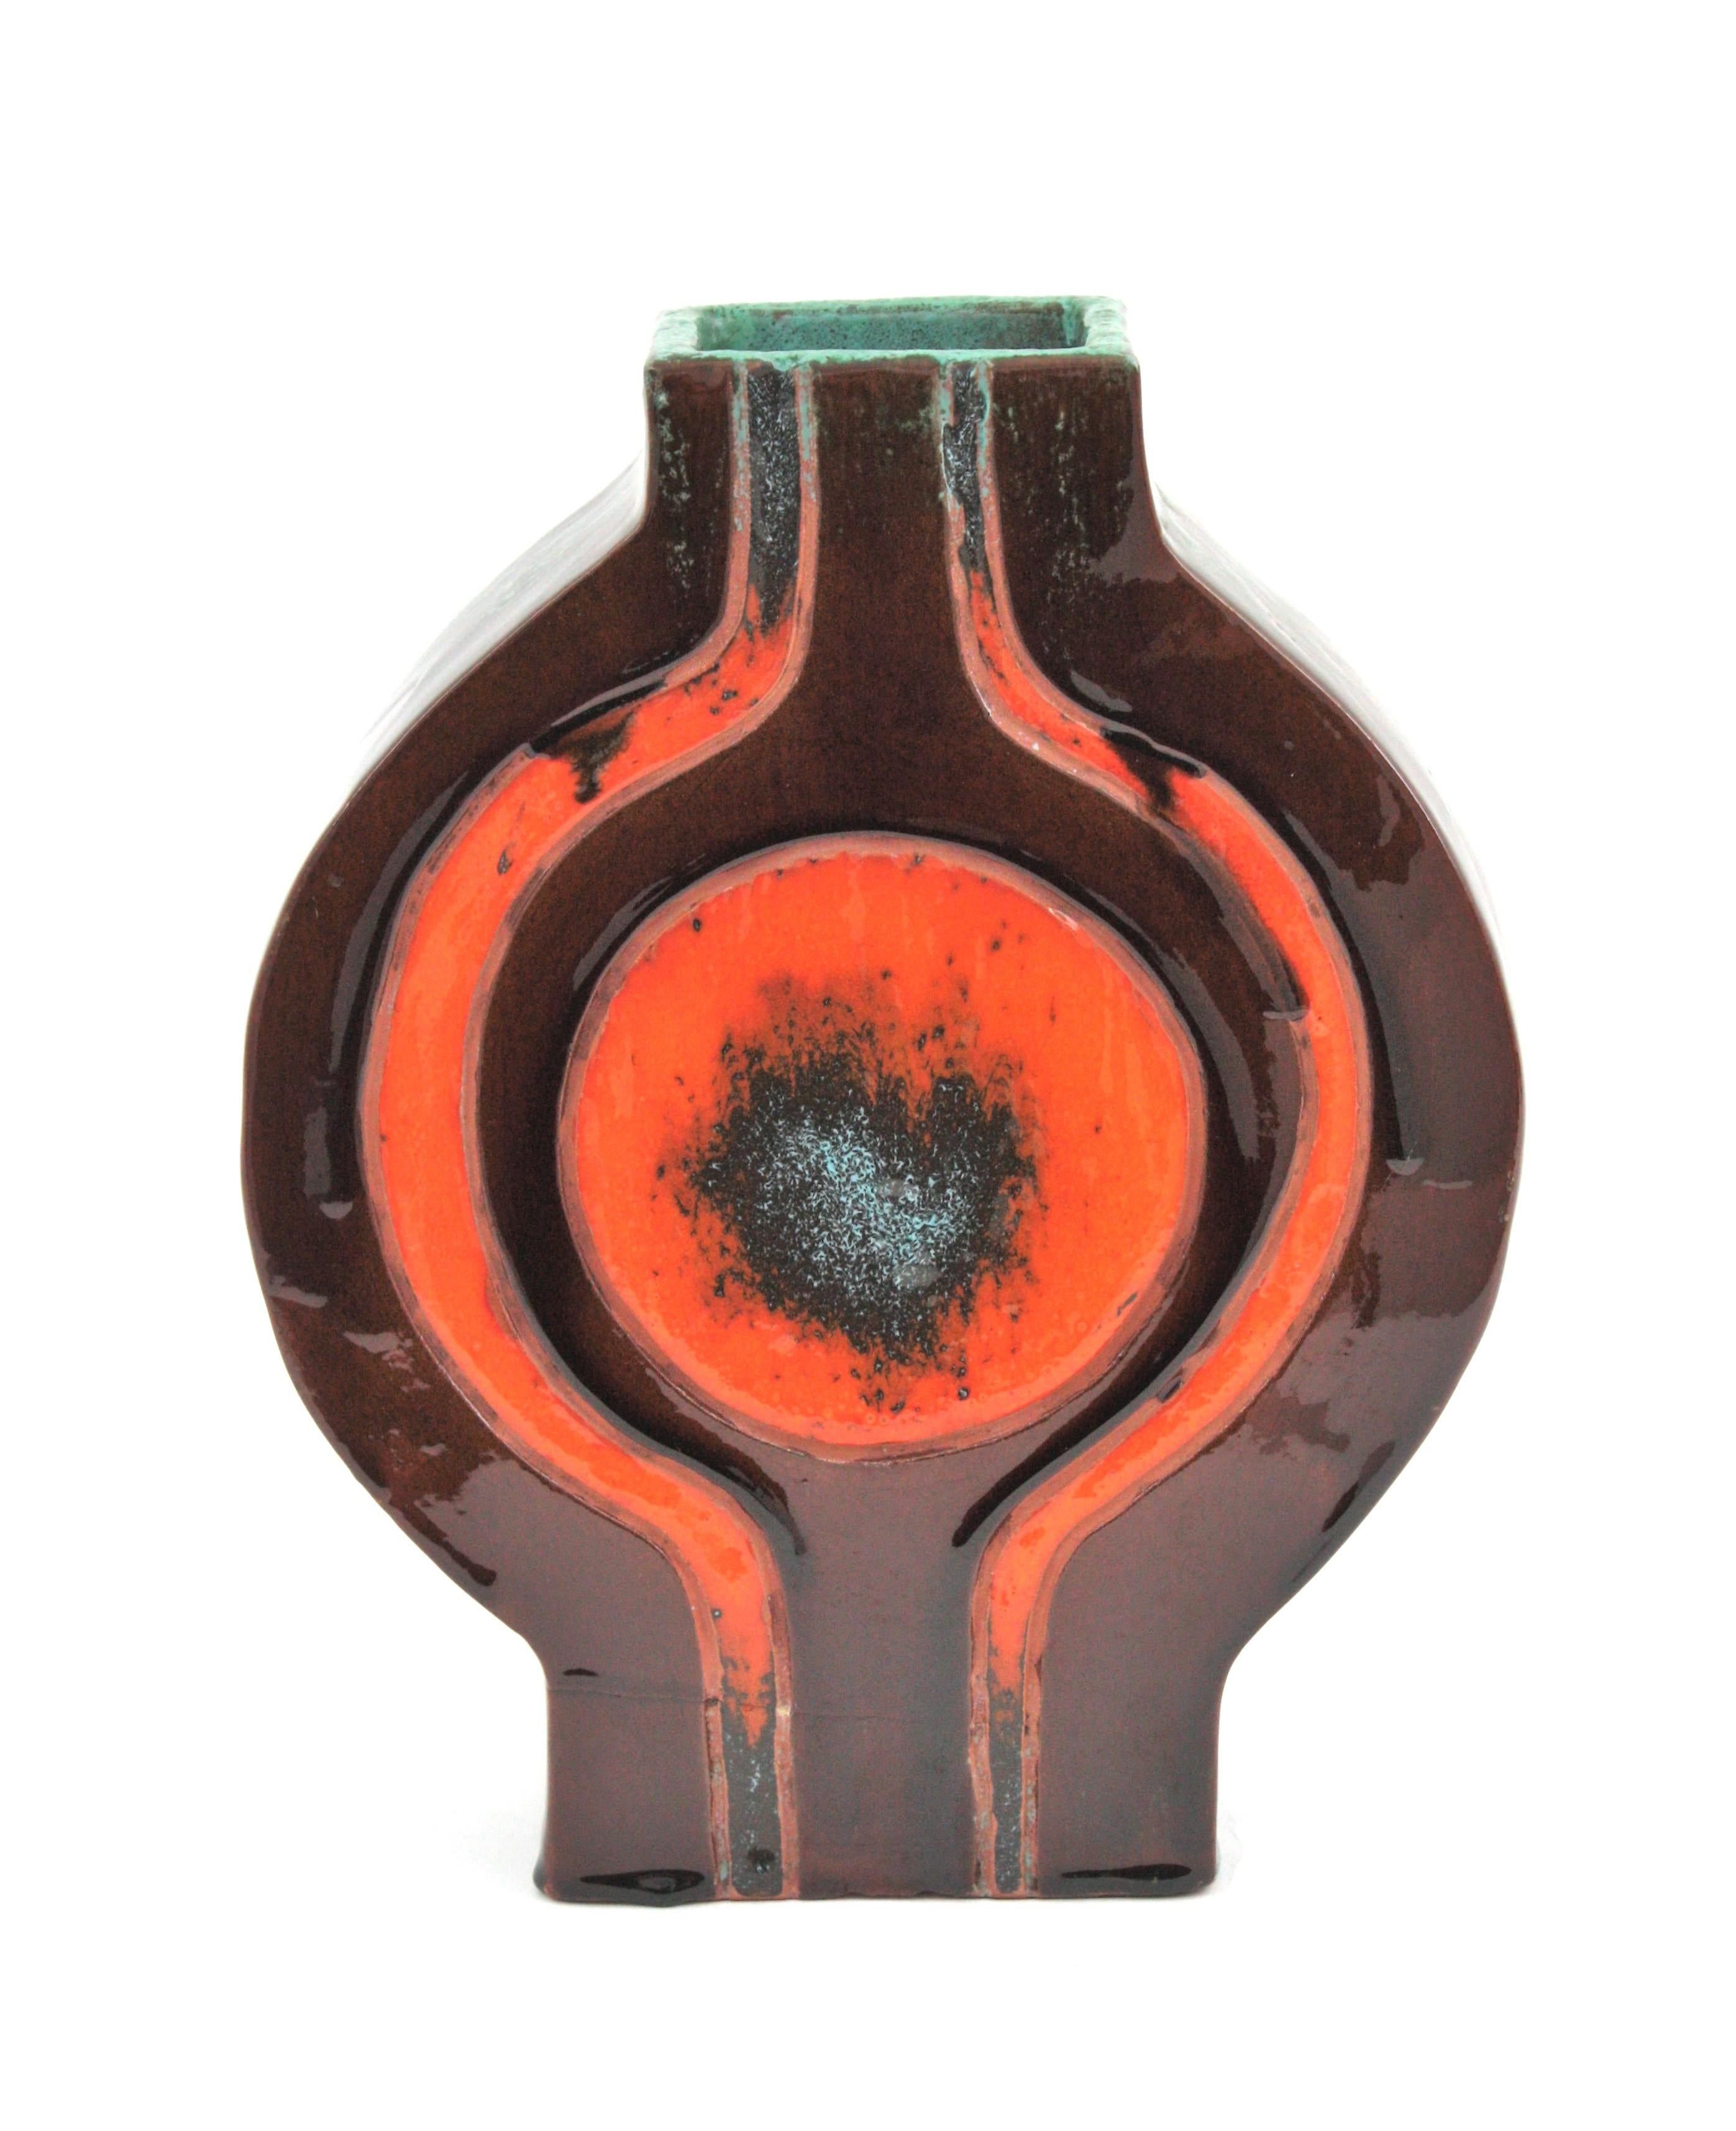 1970s Spanish Orange Brown Glazed Ceramic Vase For Sale 5